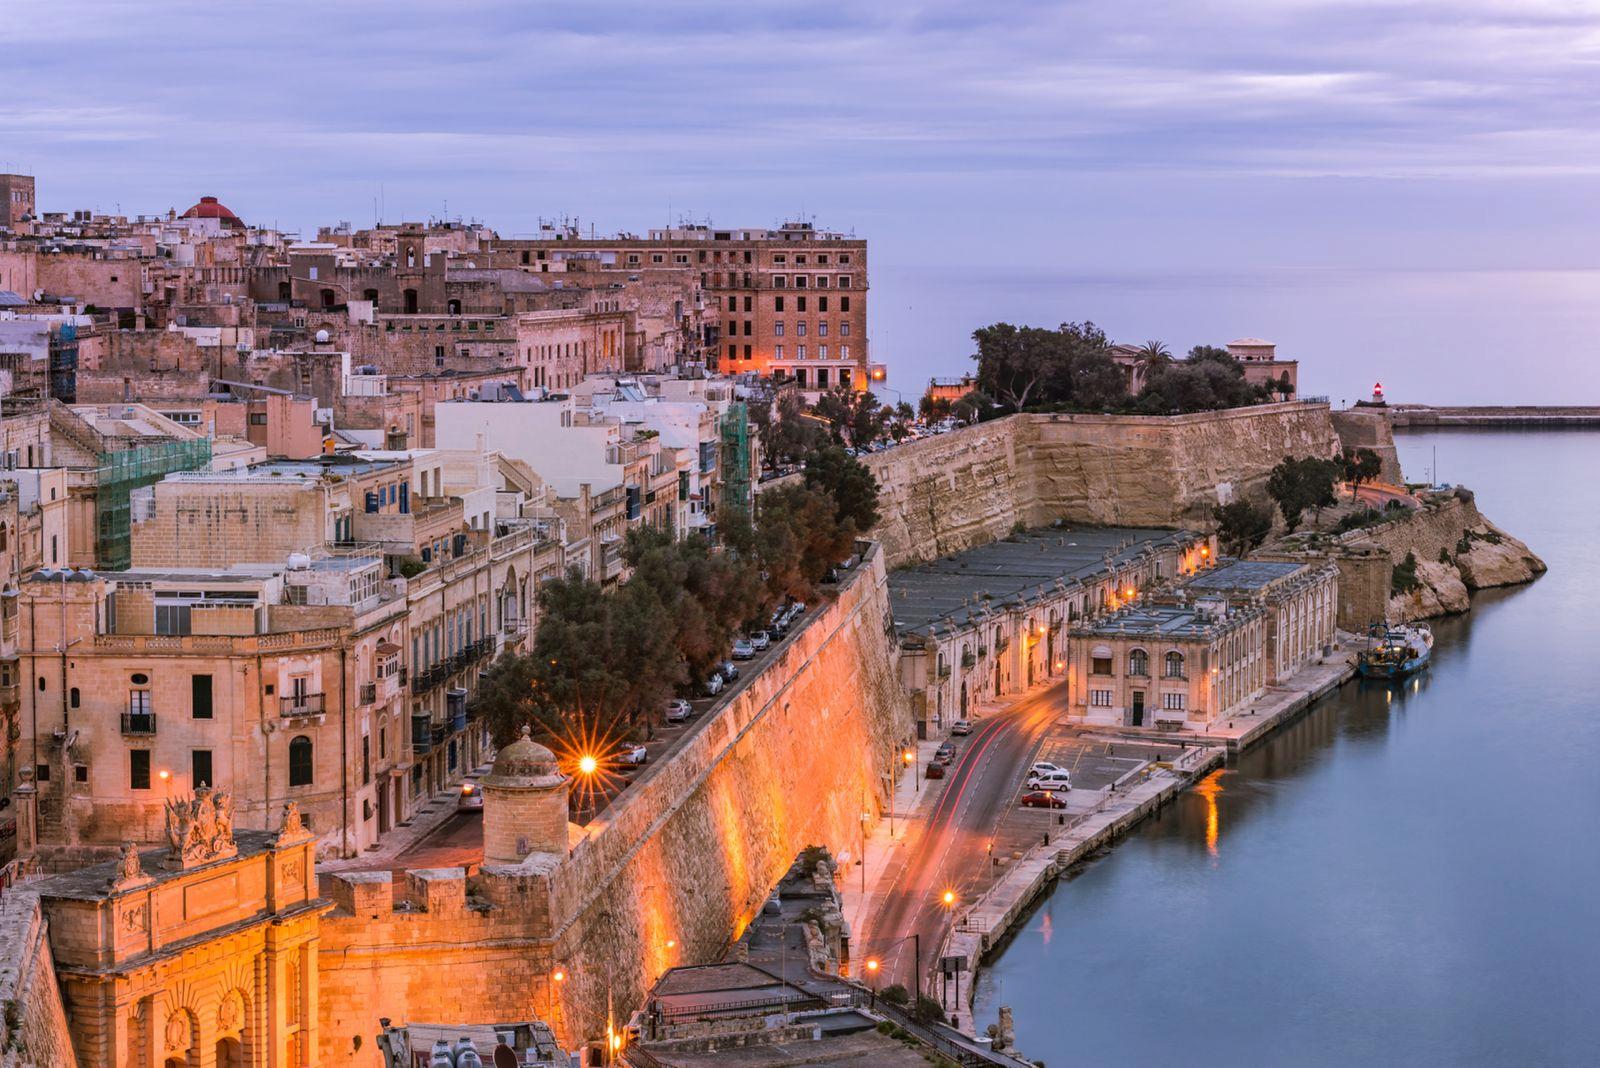 A photo of the coastline in Malta.